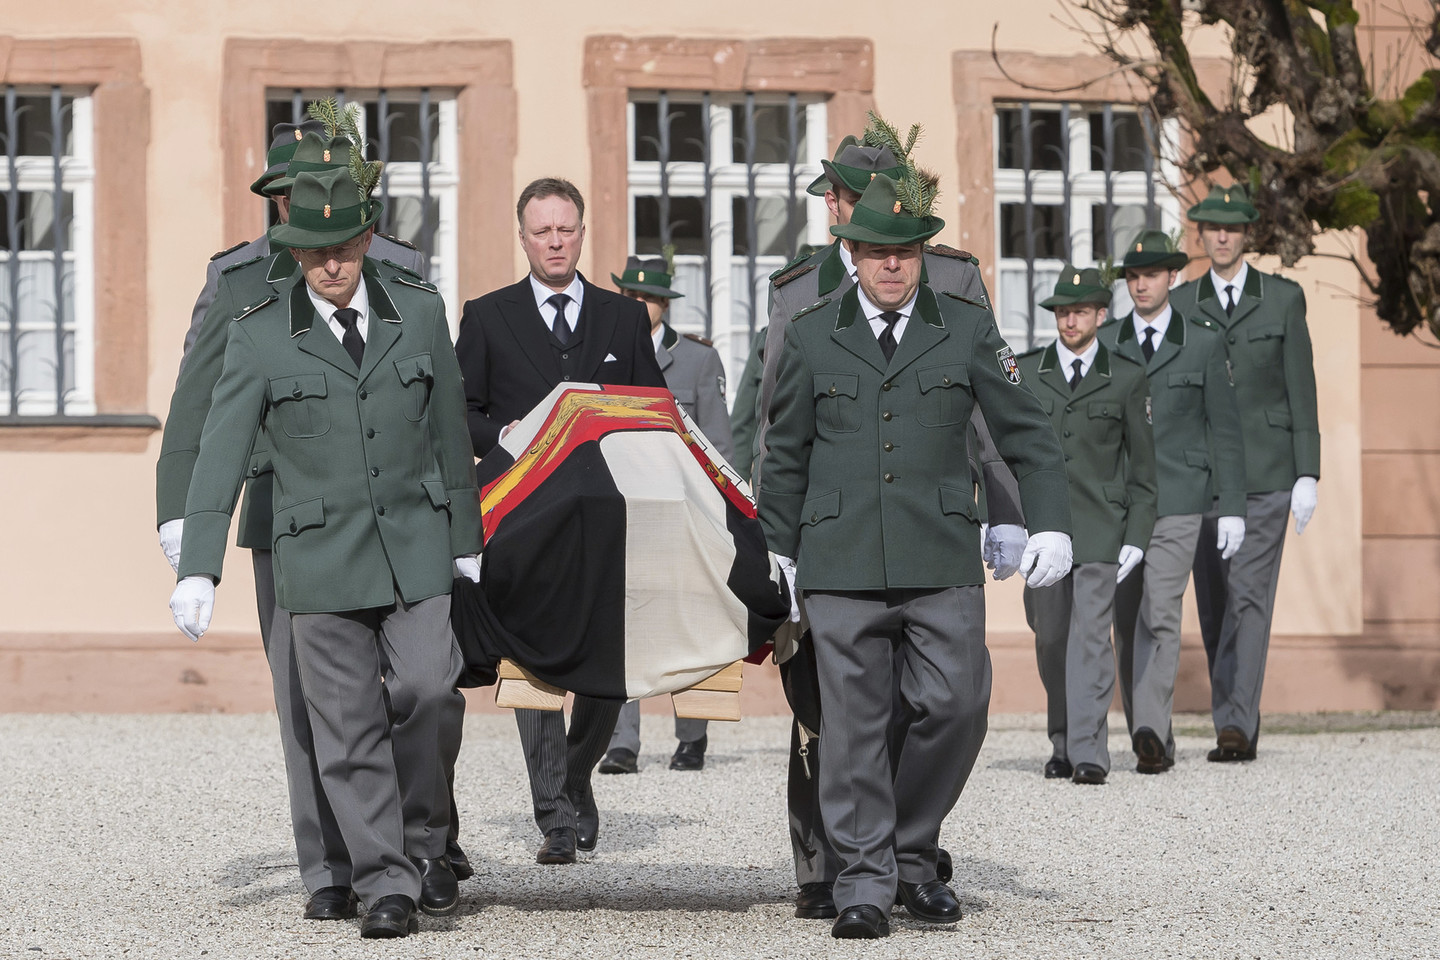 Karališkos laidotuvės Danijoje: į paskutinę kelionę palydėtas princas Richardas.<br>AP nuotr.